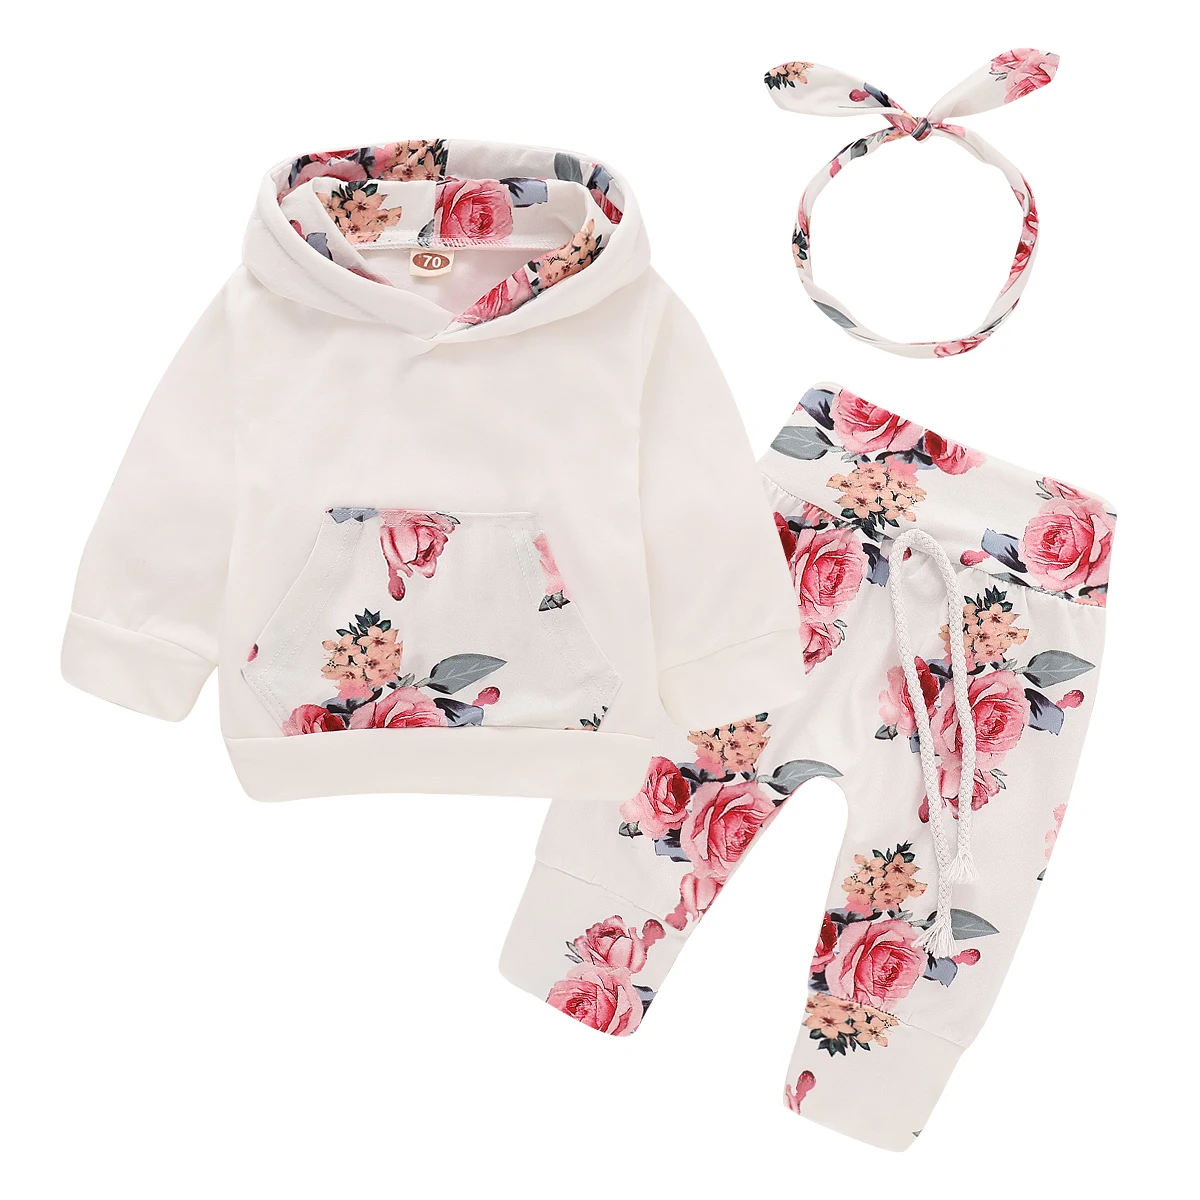 Комплект одежды для новорожденных девочек 3-18 месяцев на первое Рождество, белый топ+ брюки с розами+ повязка на голову, осенний комплект для малышей с цветочным принтом, D30